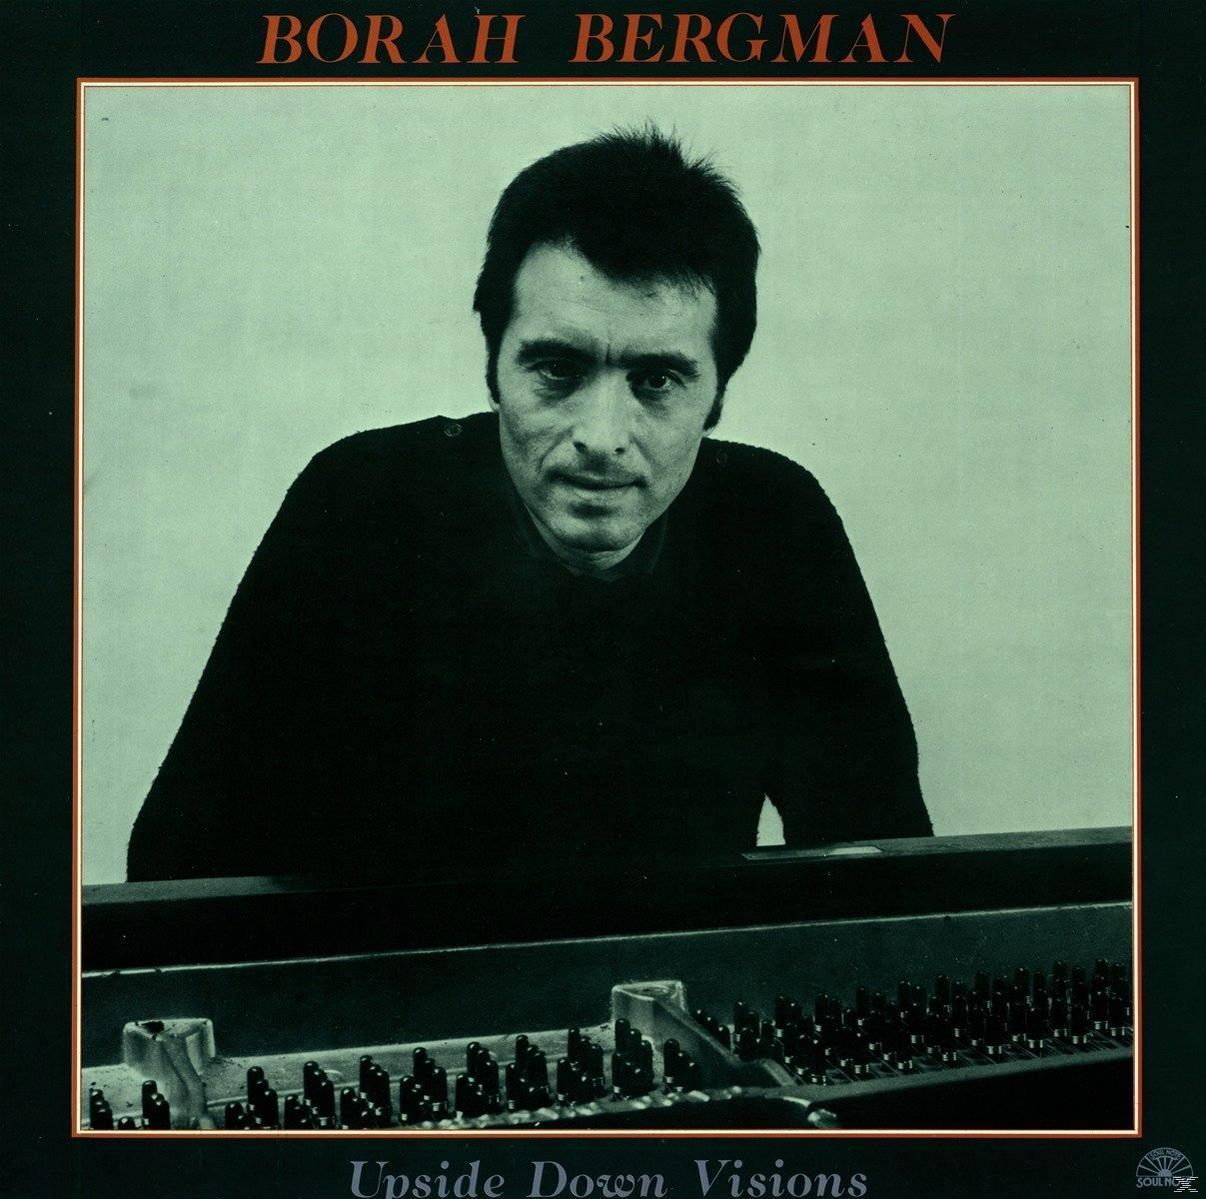 DOWN - UPSIDE VISIONS - Borah (Vinyl) Bergman